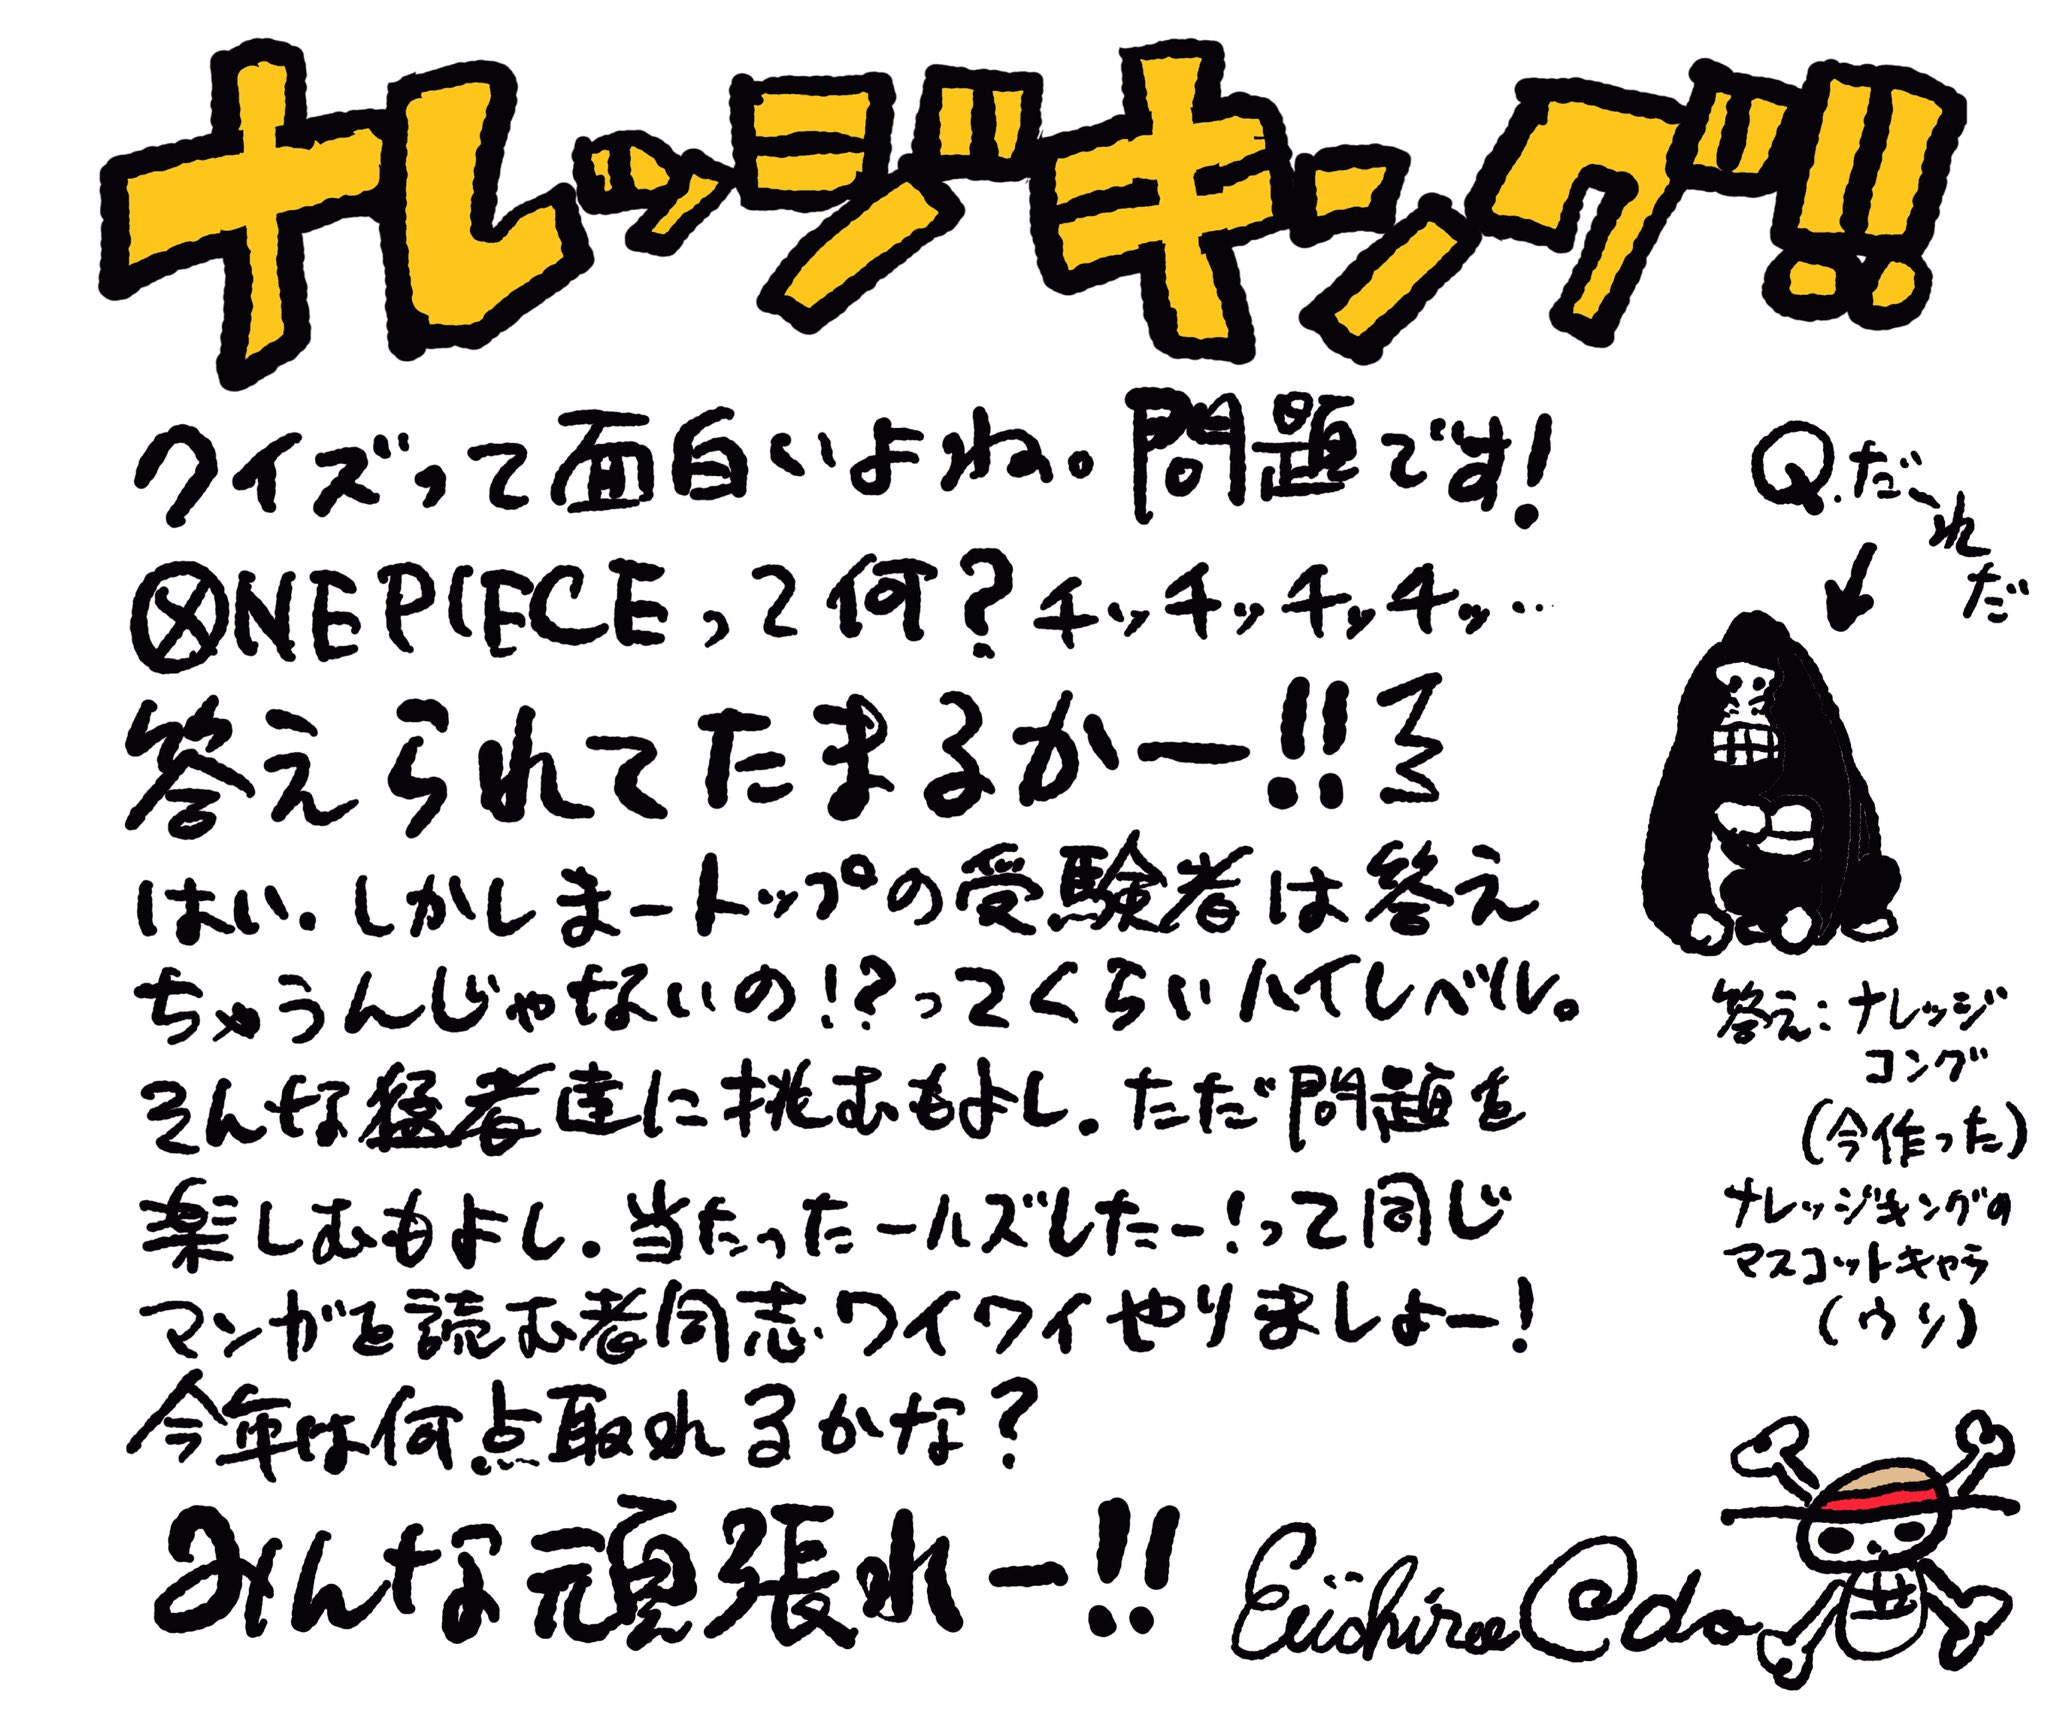 One Piece スタッフ 公式 Official 尾田さんからナレッジキングに向けてコメントが到着 皆様どうぞナレッジキング決定戦へ登録お願い致します クイズって面白いよね のあとの文章に注目 笑 まさかの問題が君に突きつけられる 登録無料